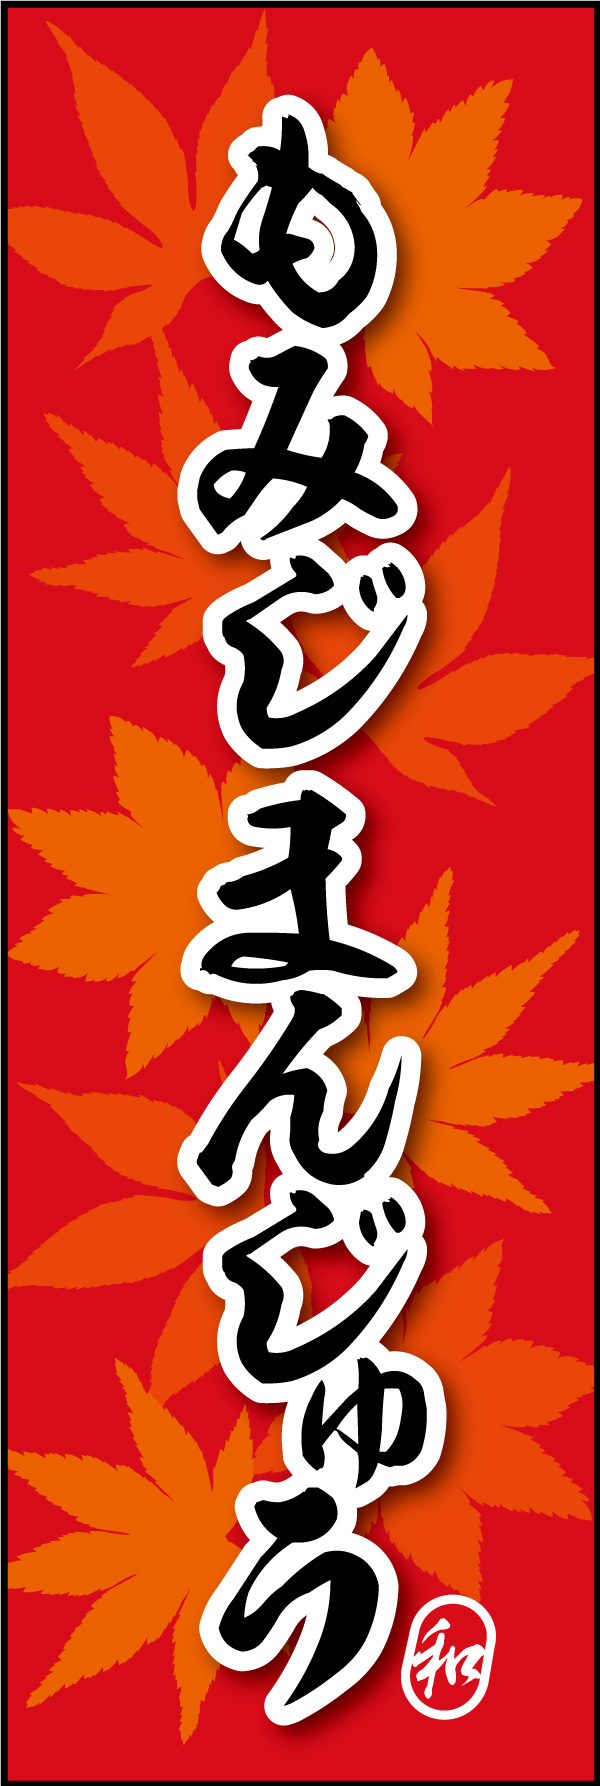 もみじまんじゅう 09 「もみじまんじゅう」の幟です。背景に紅葉柄を使い、和の雰囲気をだしました。(Y.M)